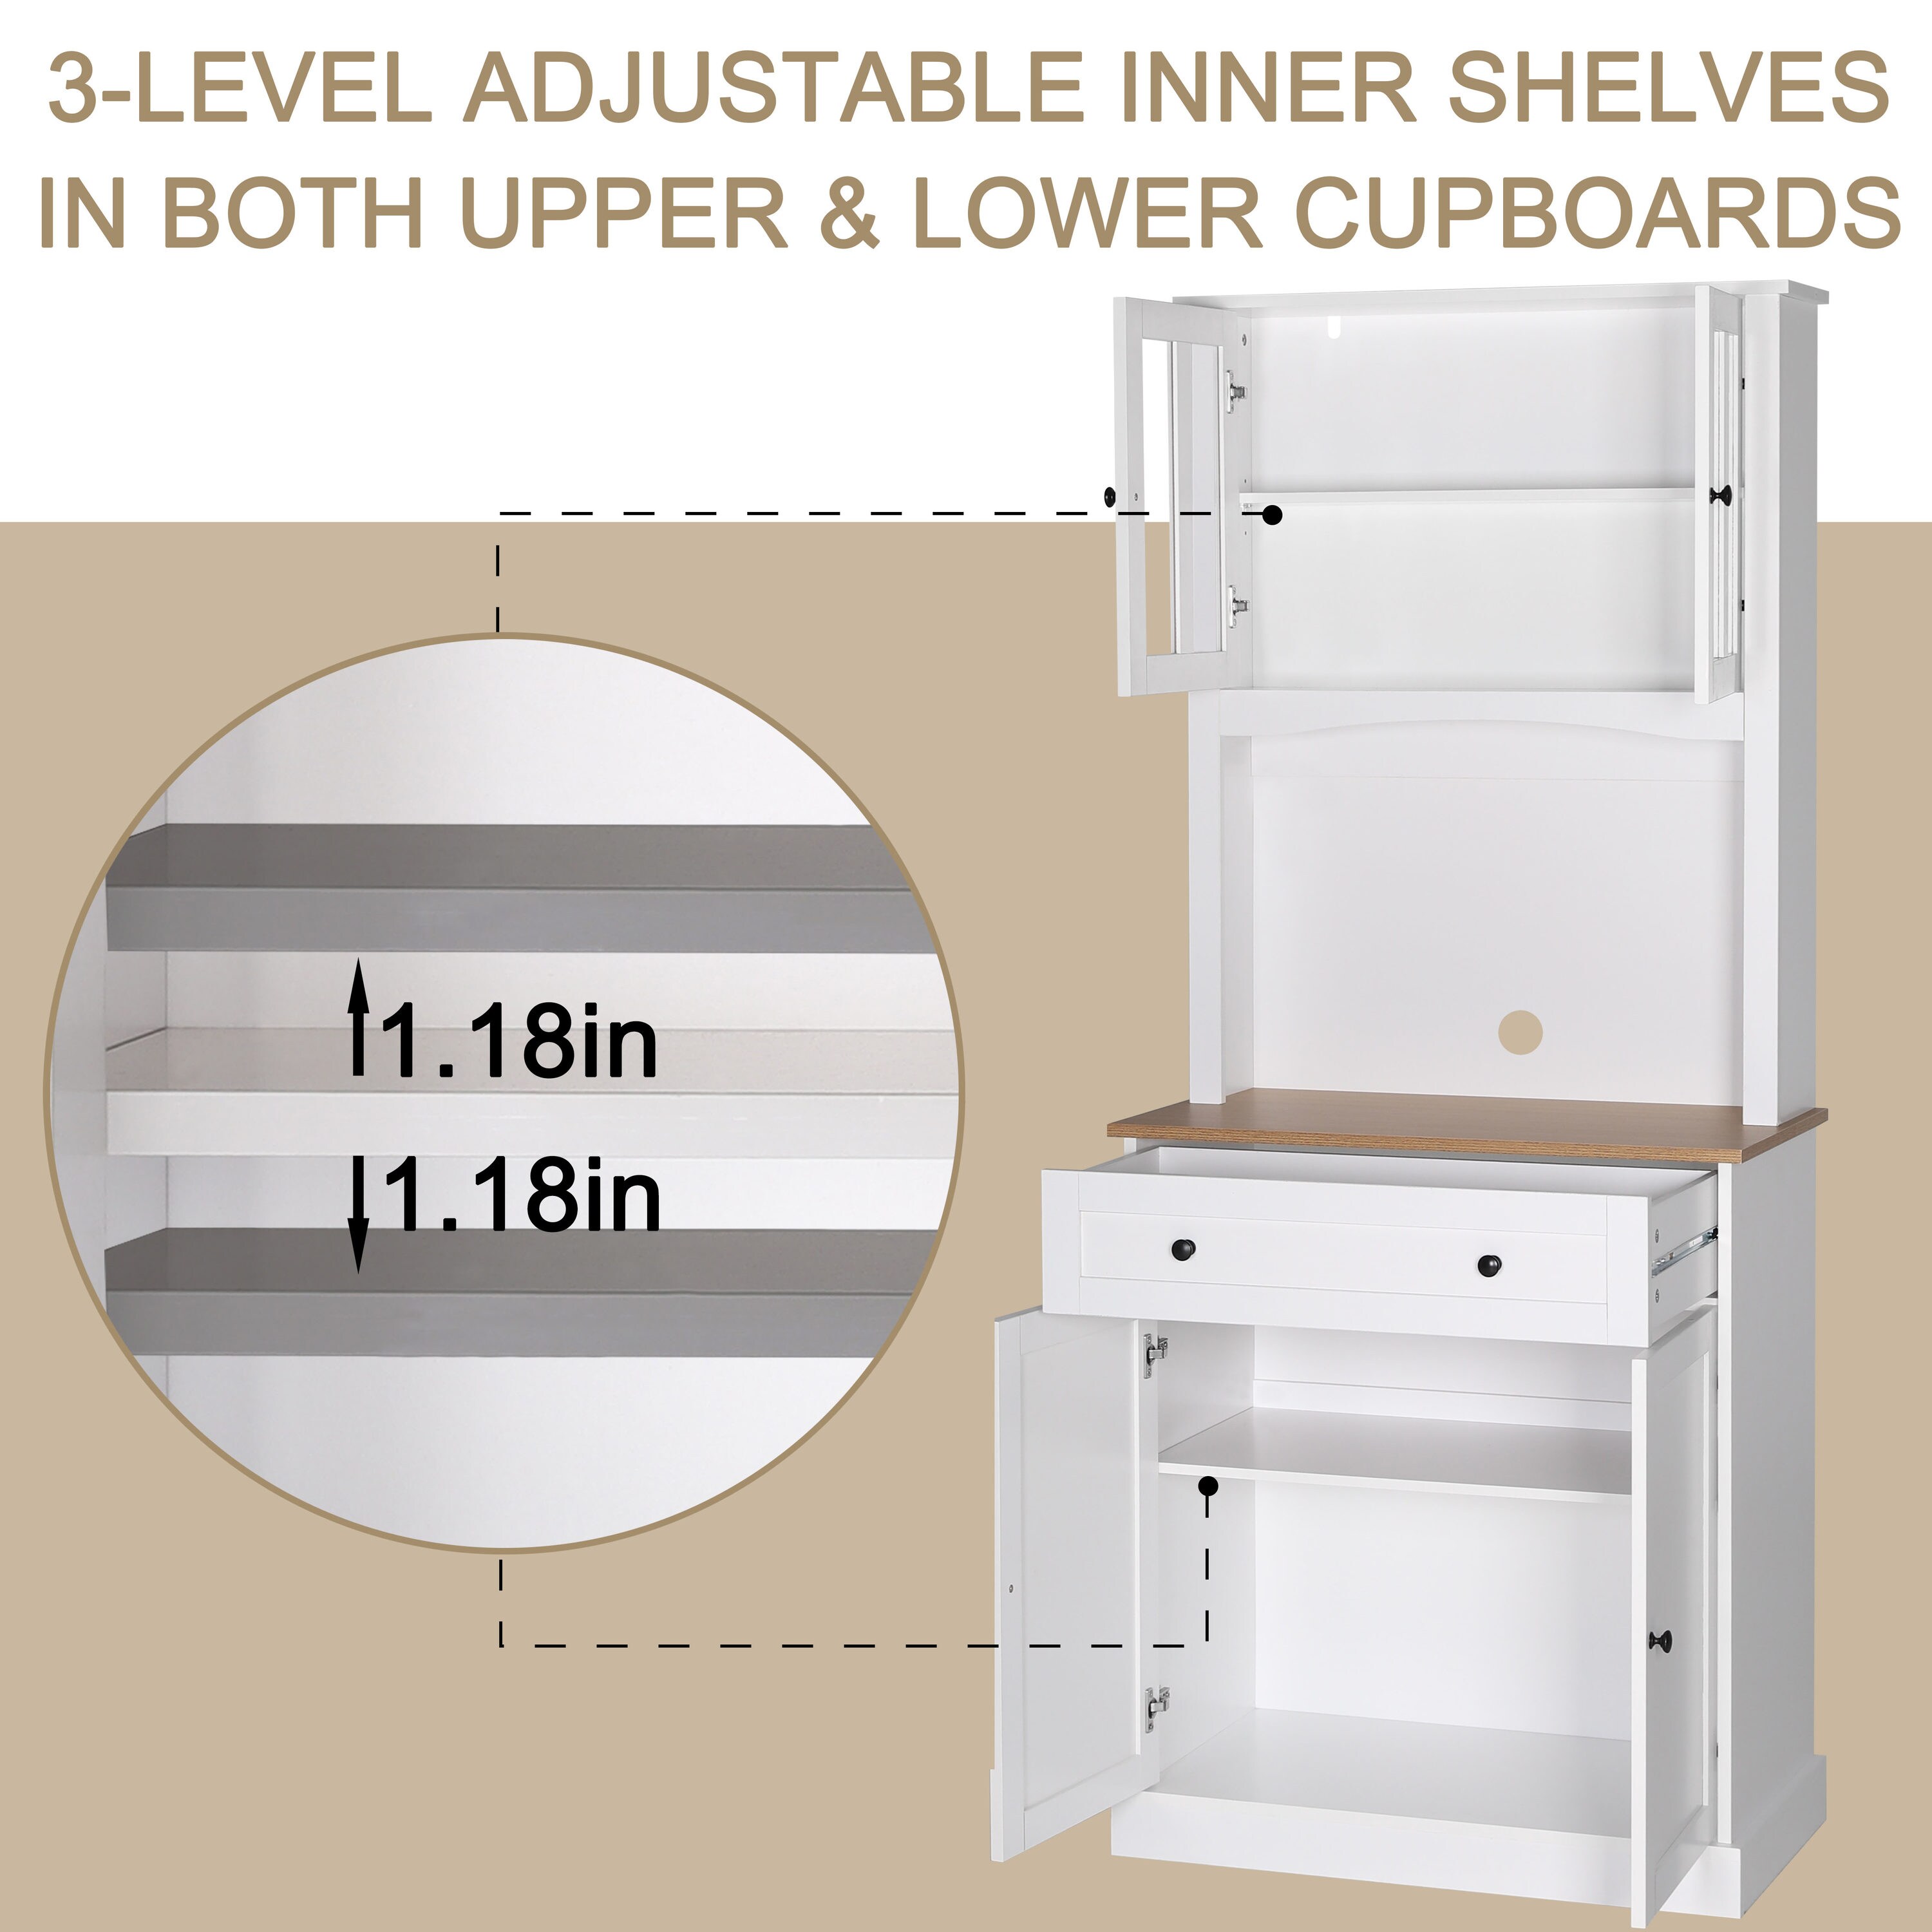 Kitchen Cabinet Storage Systems ⋆ C&W Appliance Service